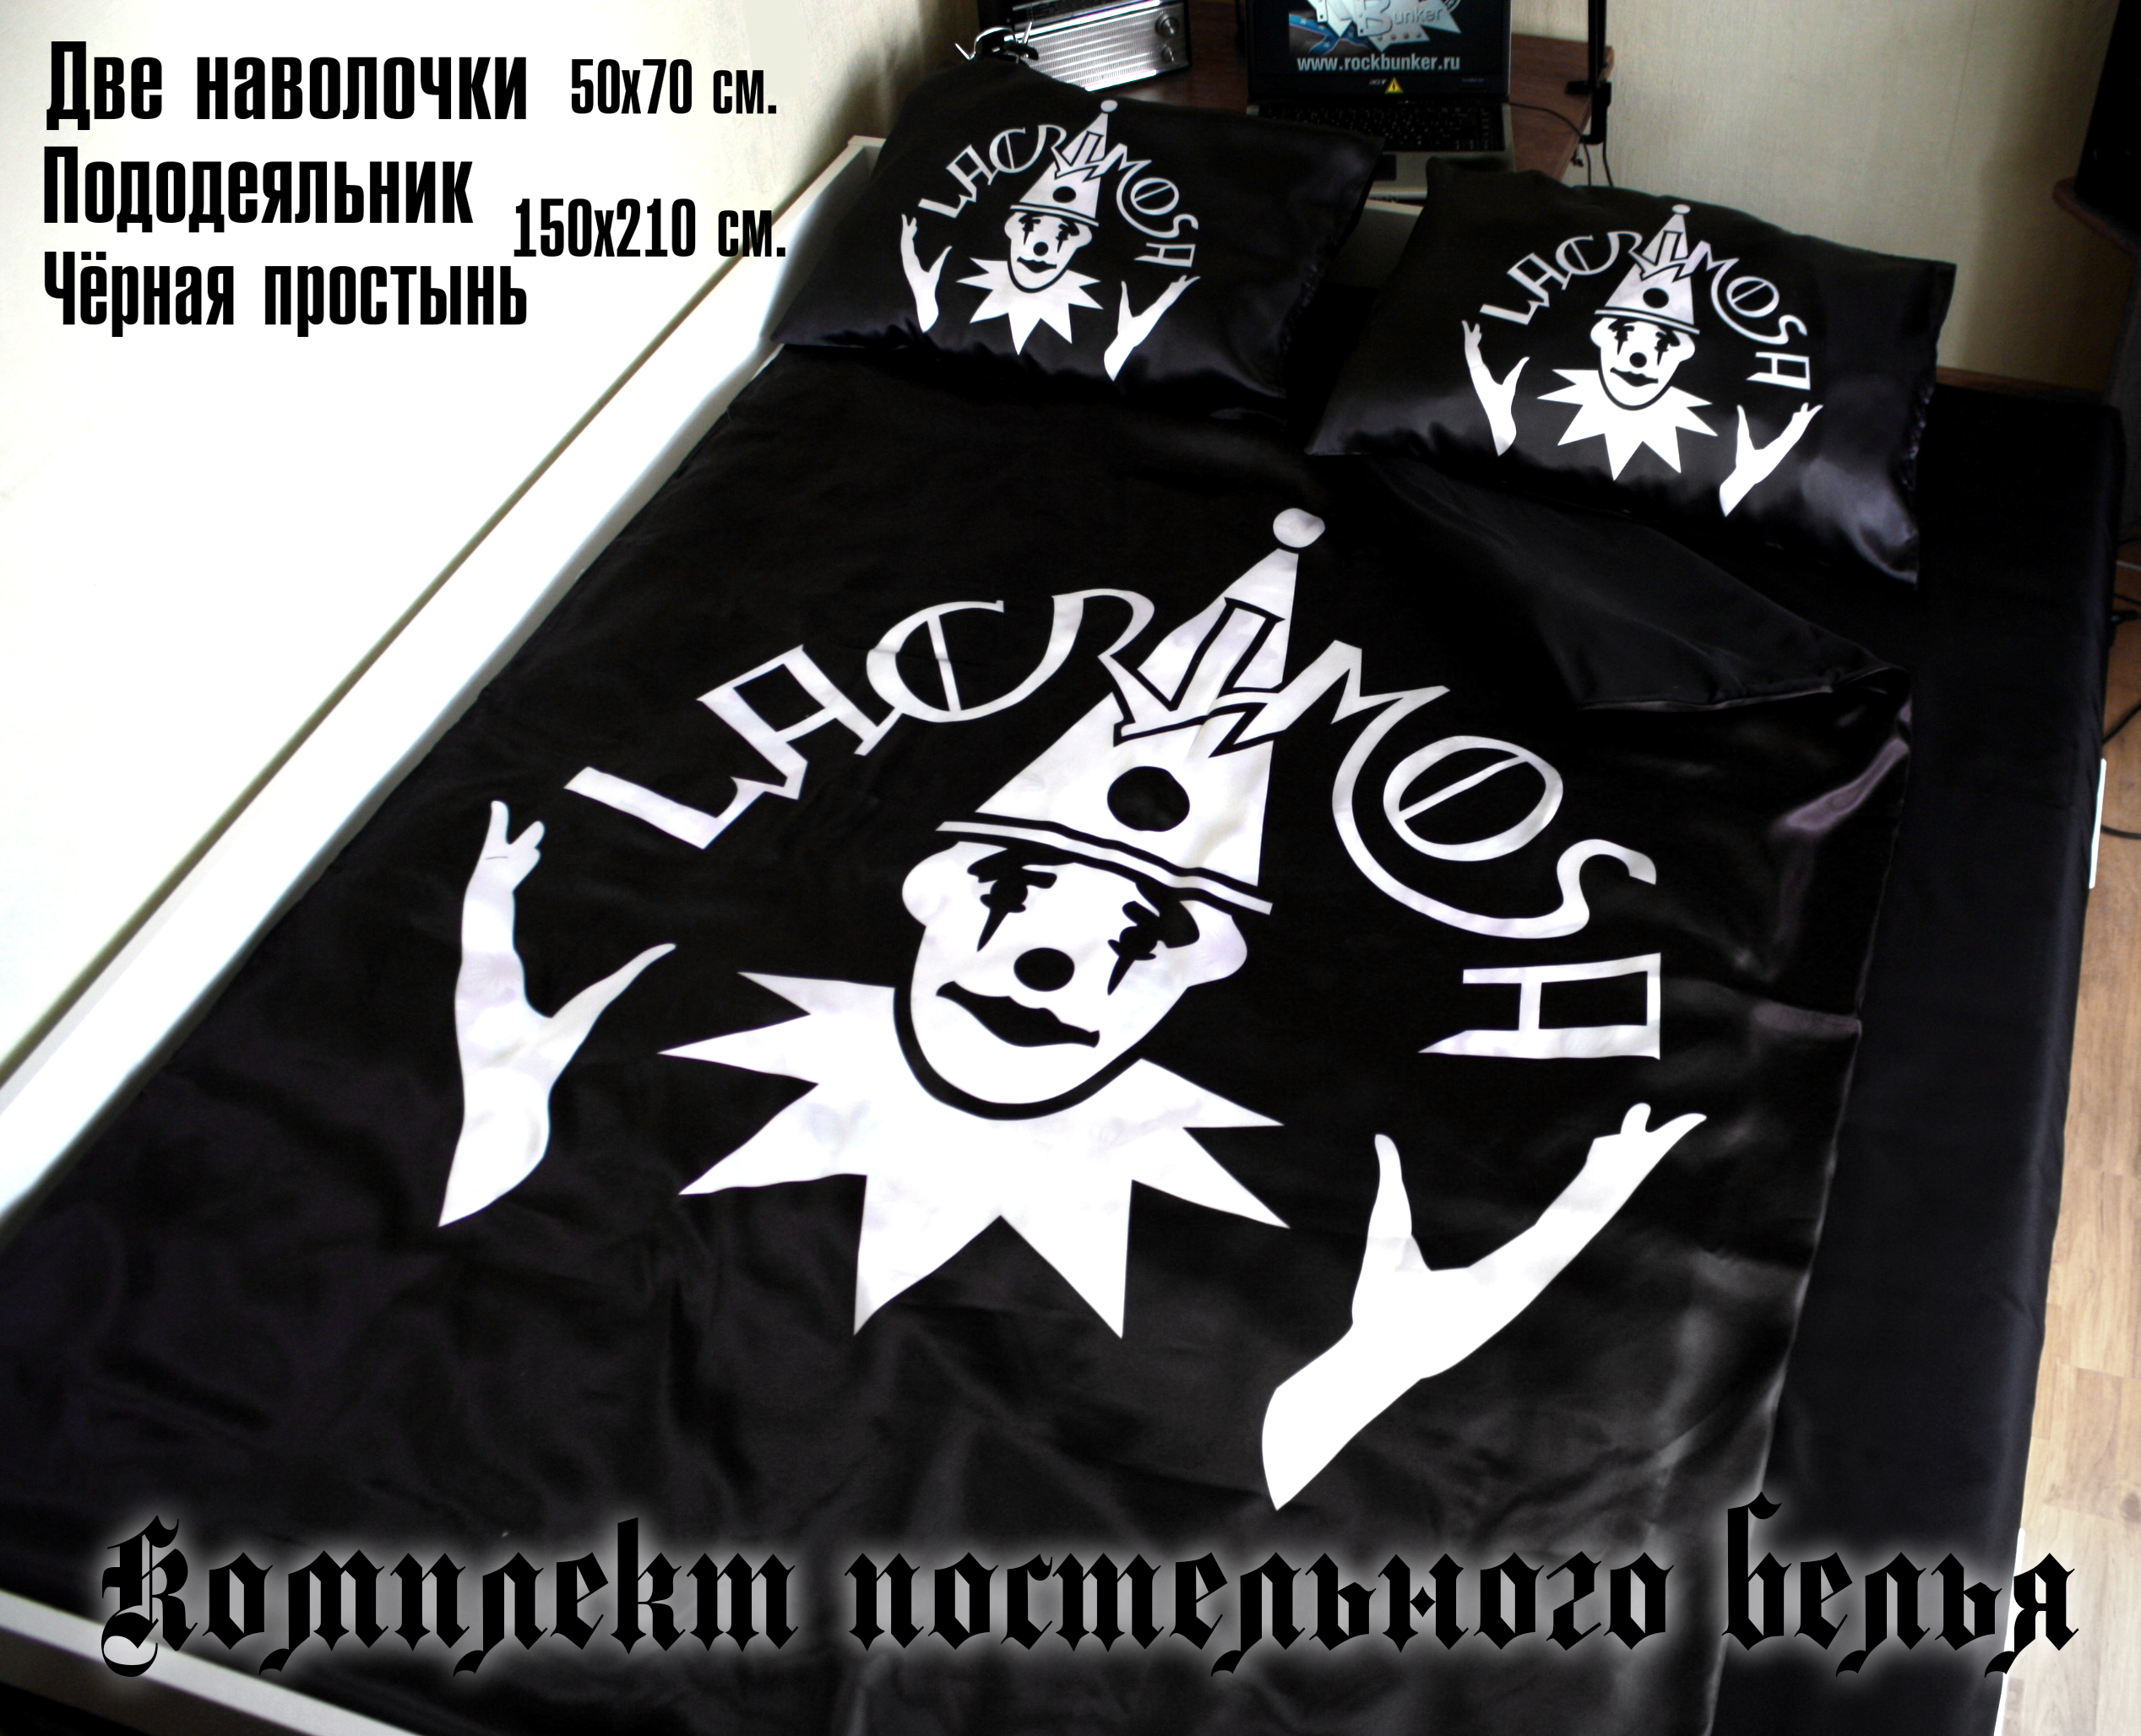 Постельное белье Lacrimosa - фото 5 - rockbunker.ru